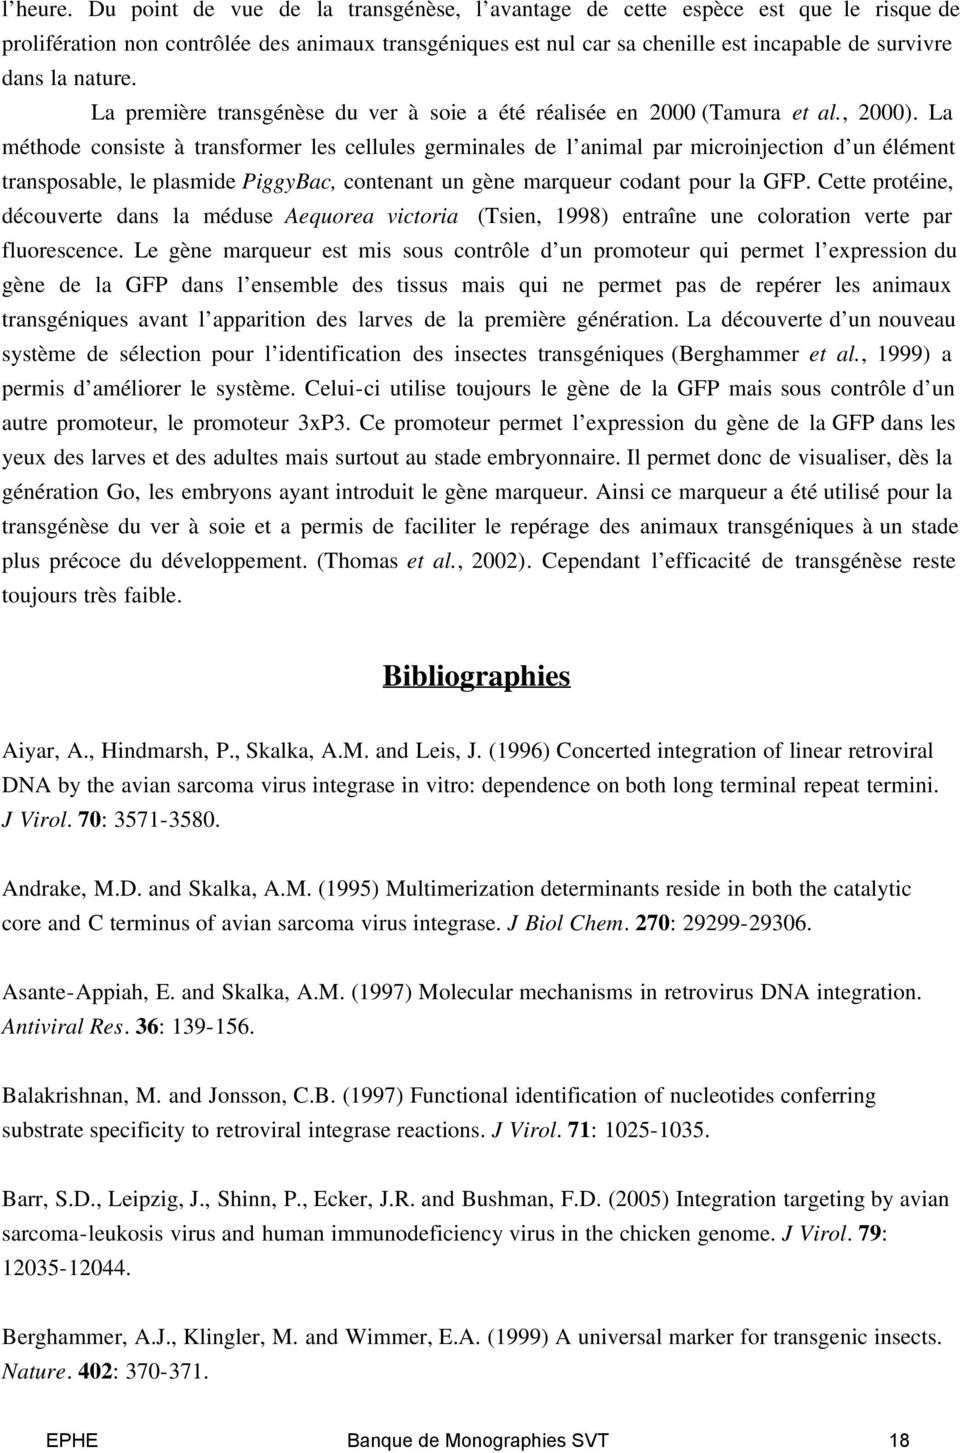 nature. La première transgénèse du ver à soie a été réalisée en 2000 (Tamura et al., 2000).